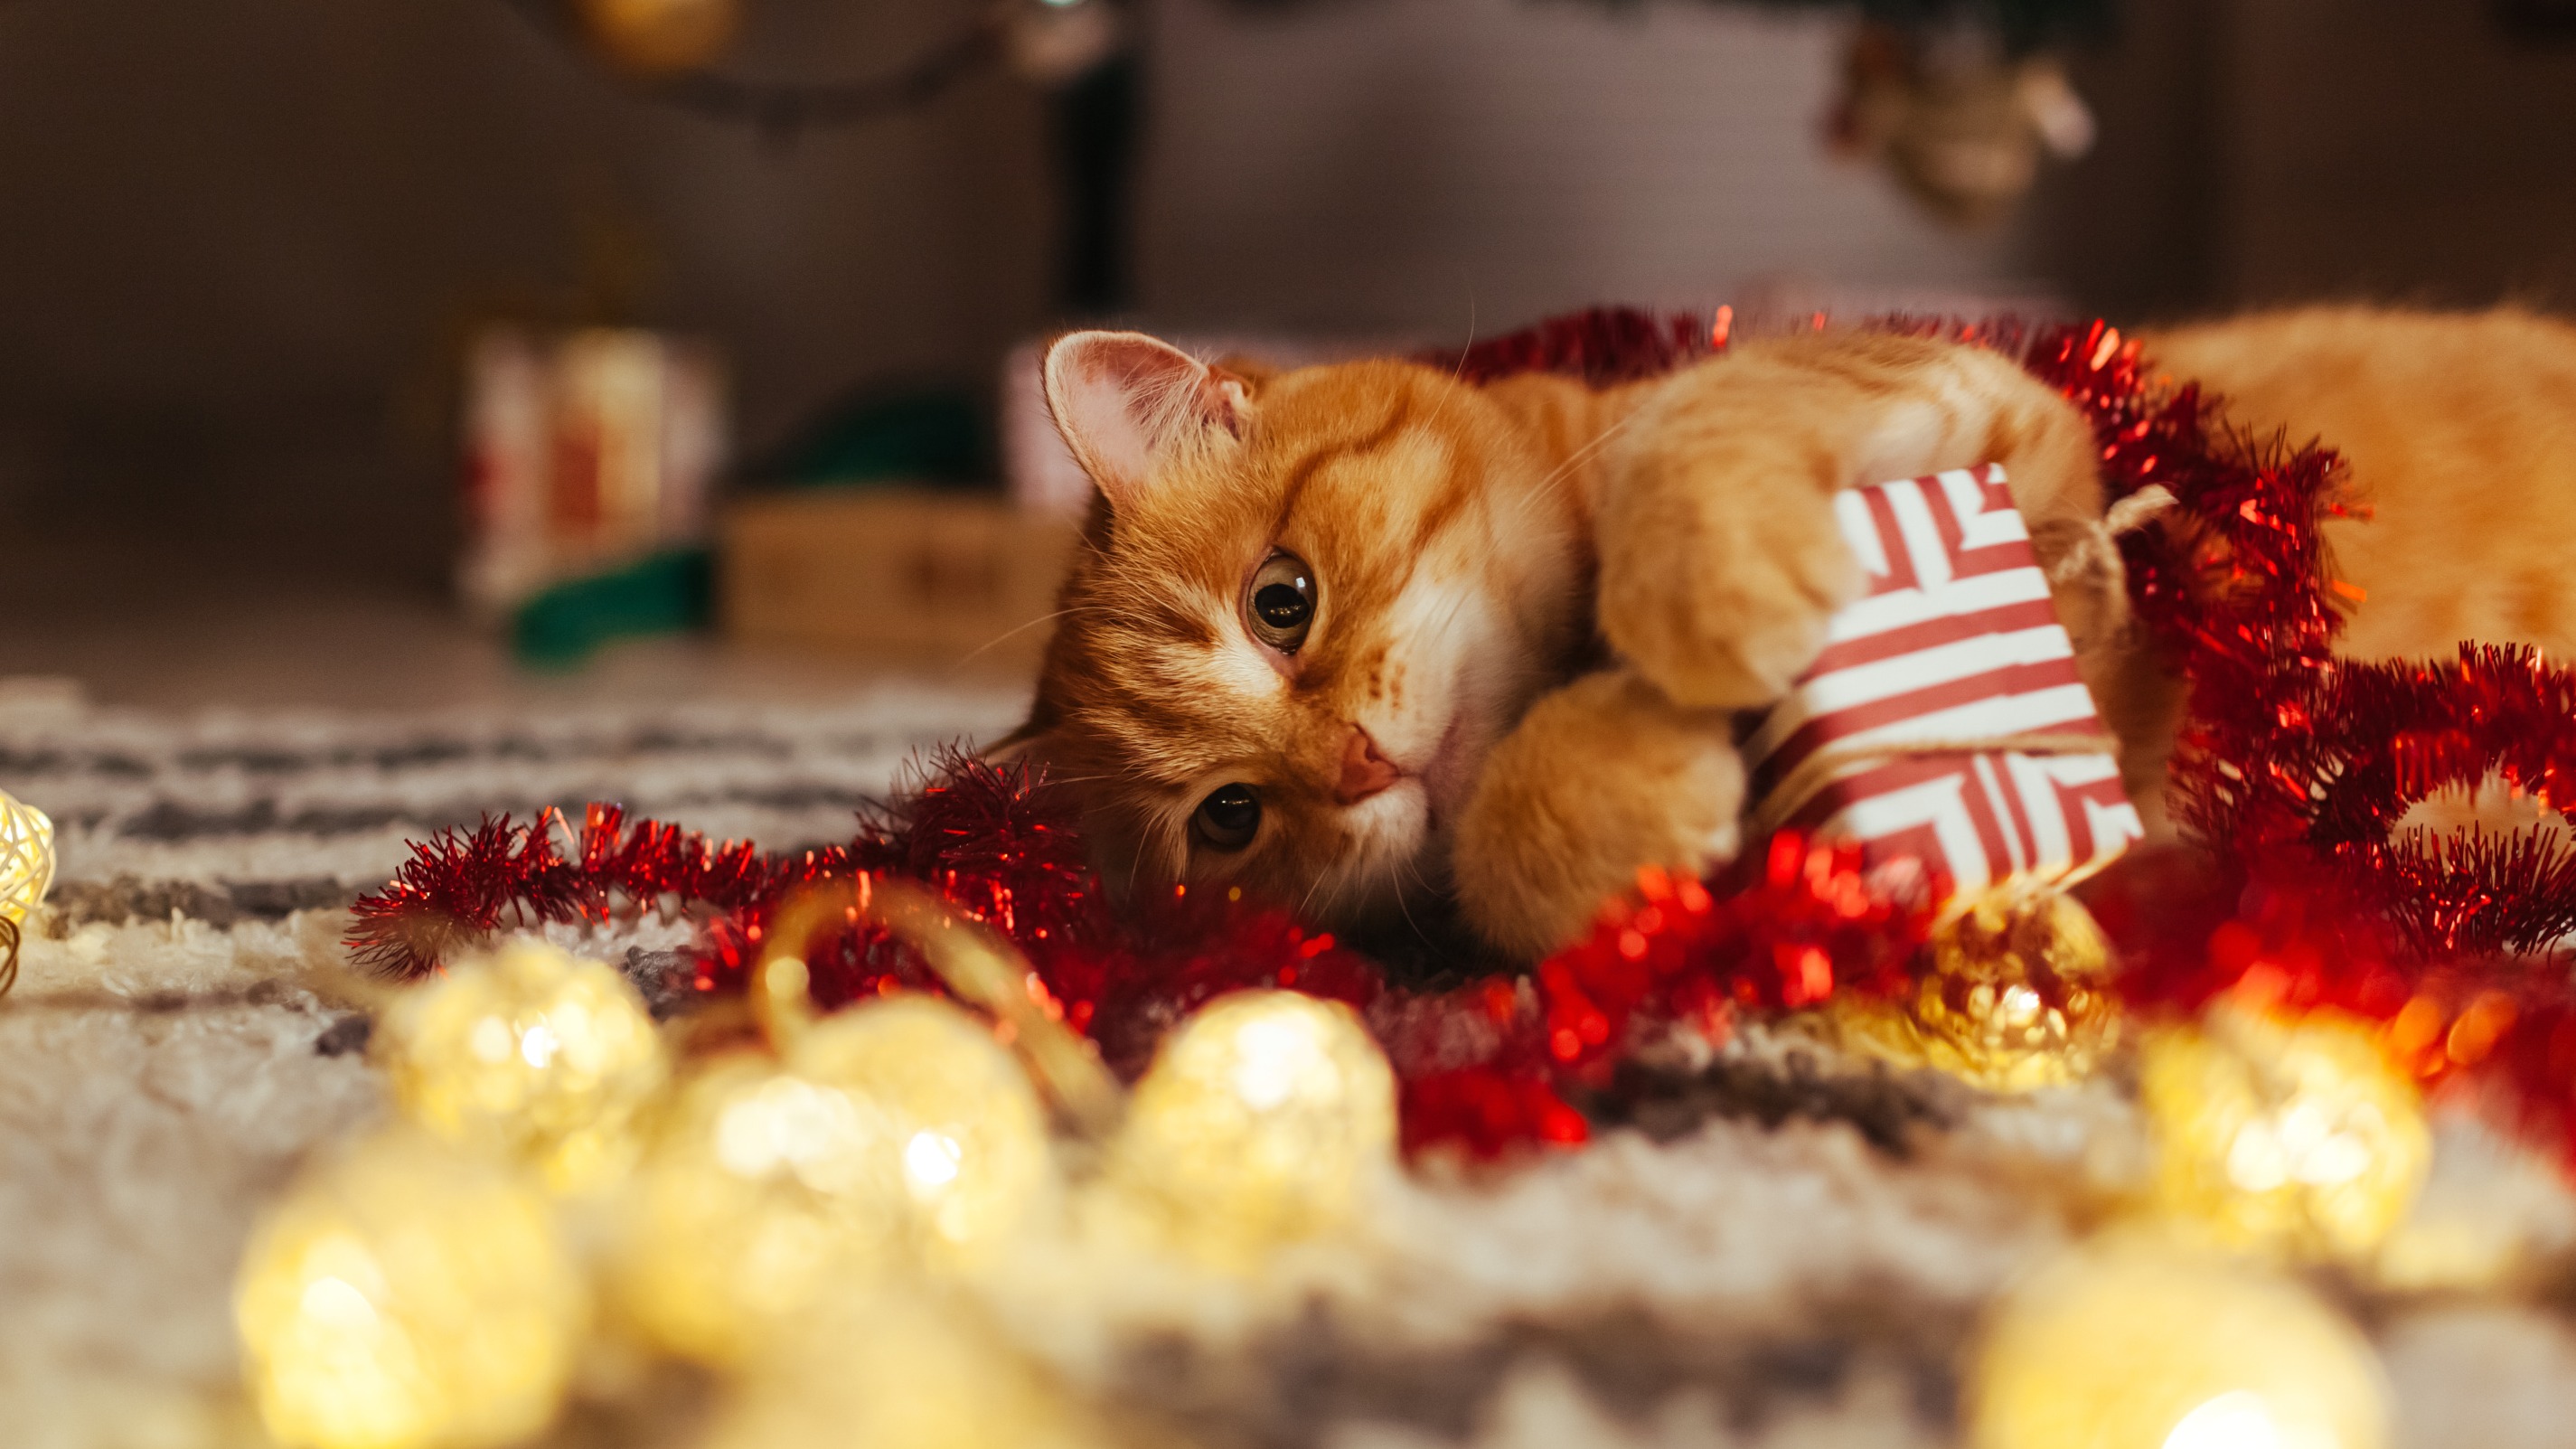 Cadeaux de Noël pour chat : quelques idées